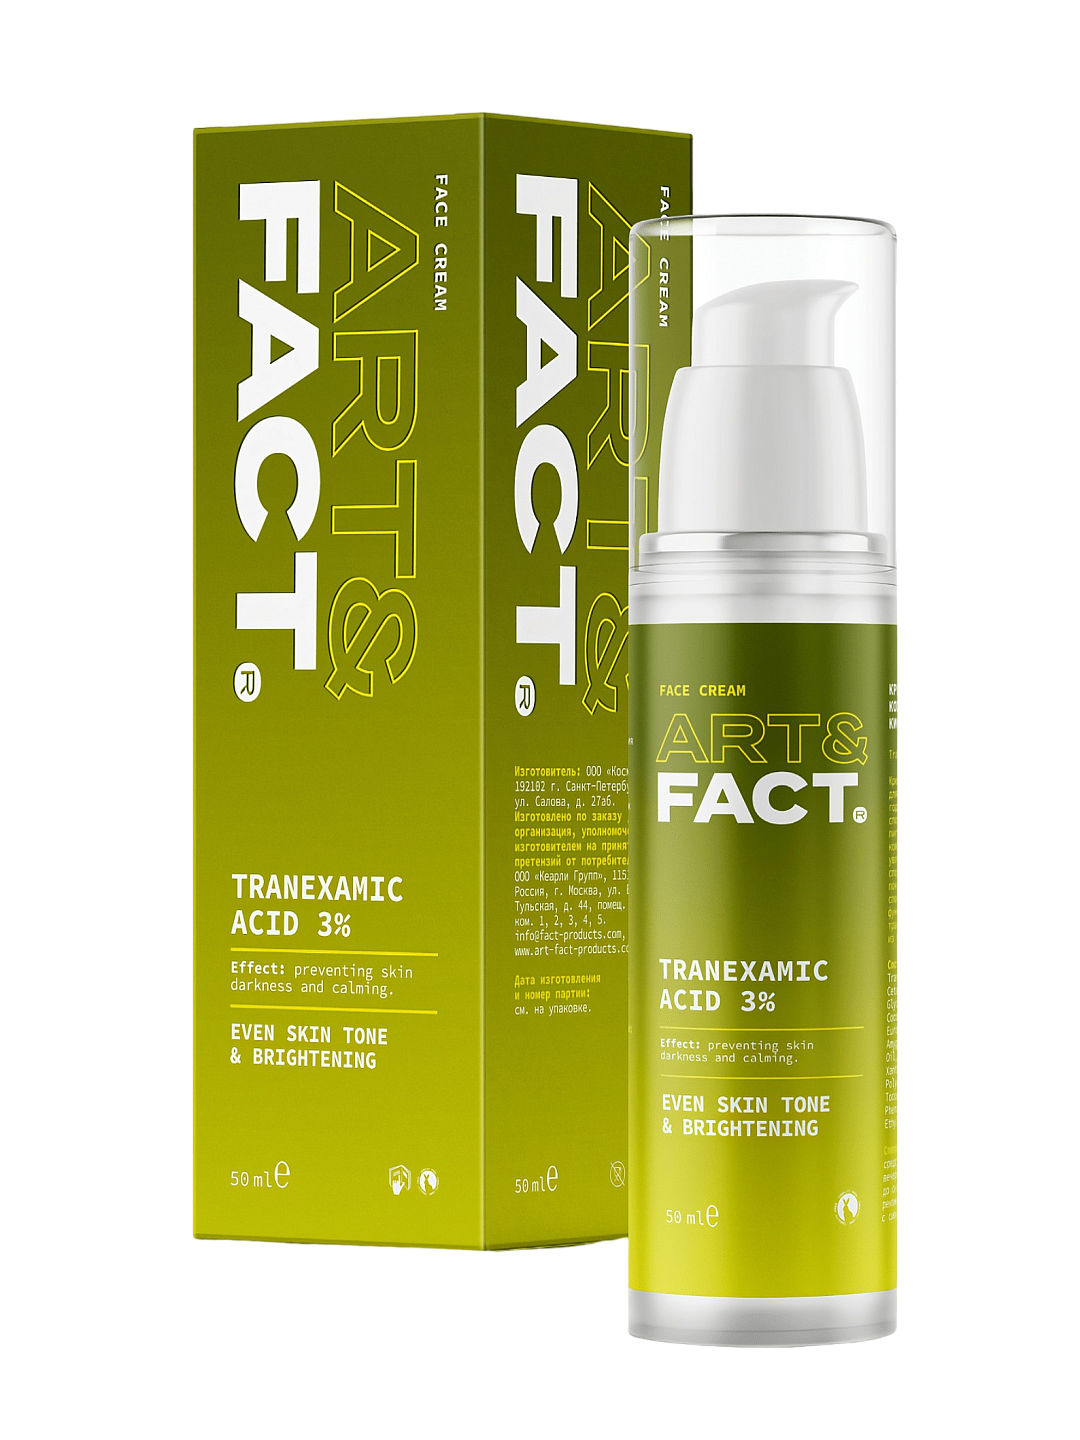 Крем осветляющий для кожи лица с транексамовой кислотой 3% Tranexamic Acid 3%